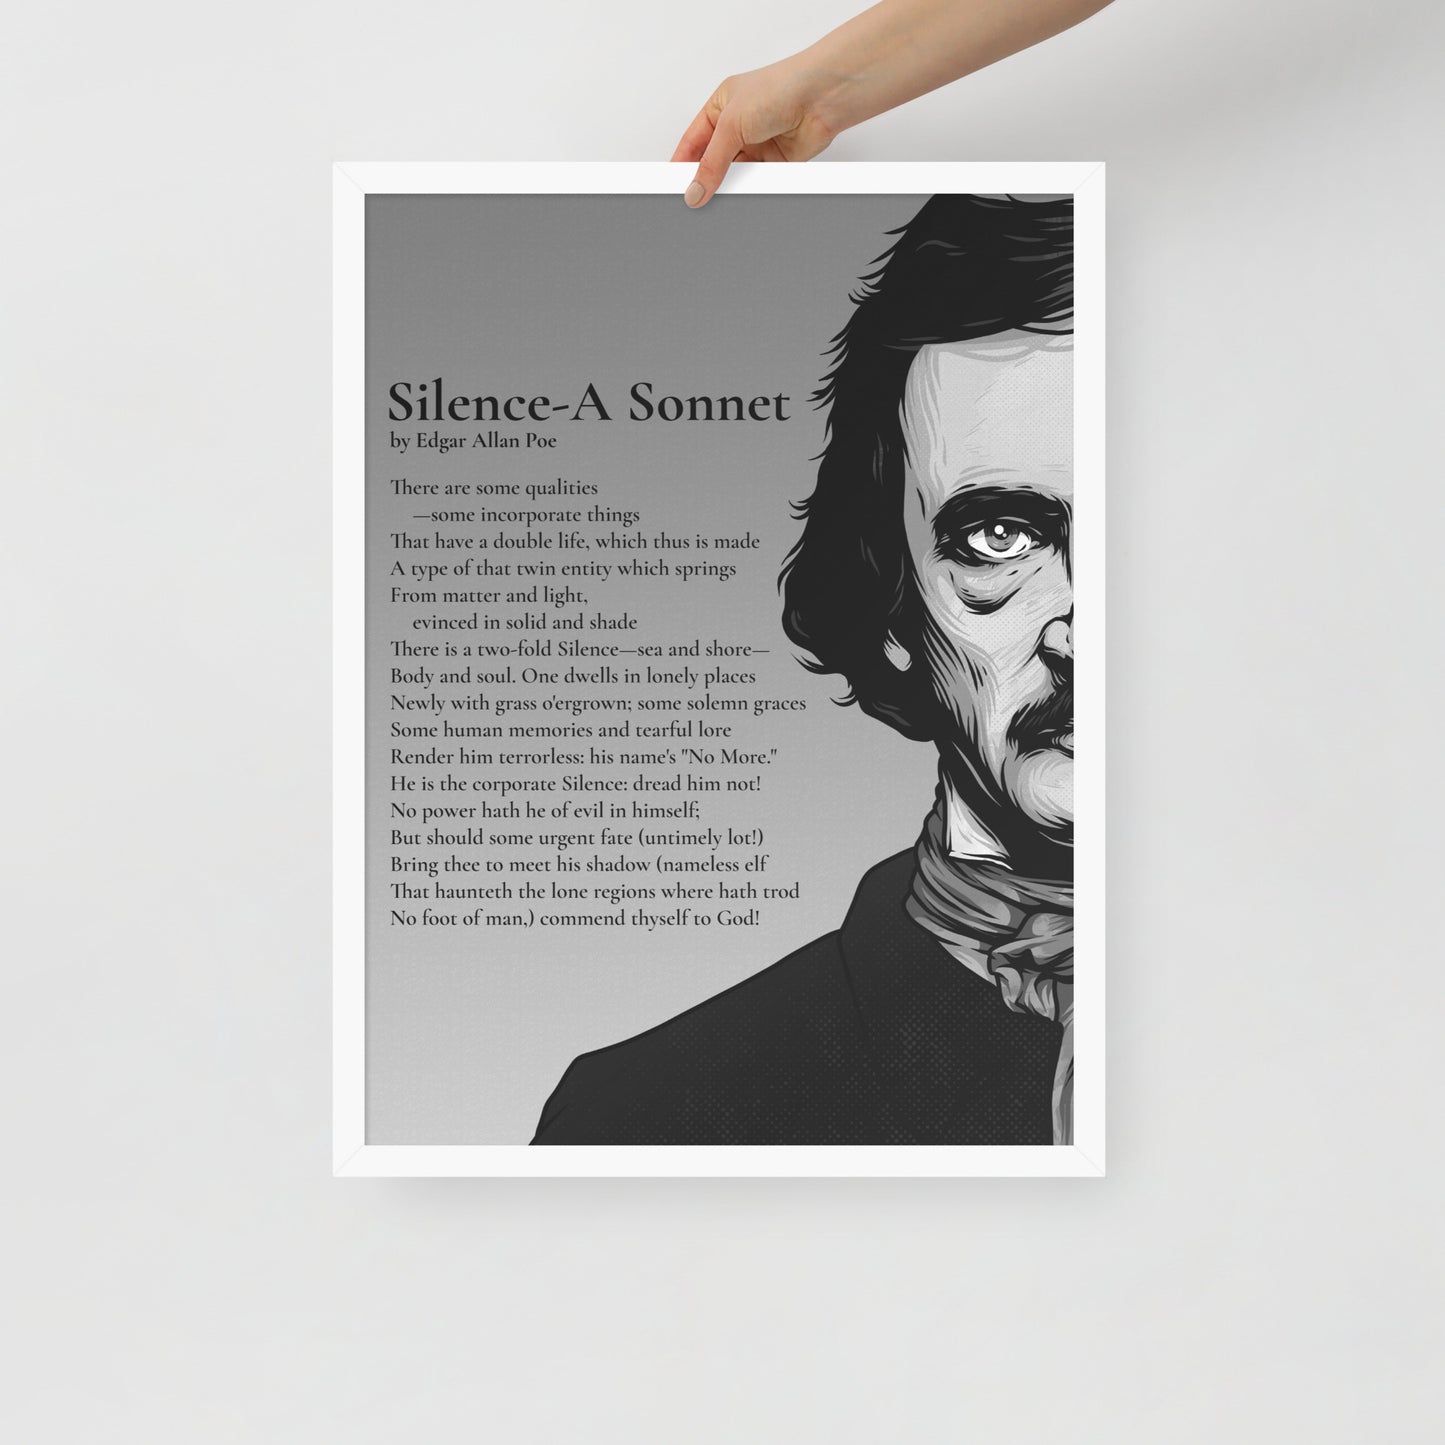 Edgar Allan Poe's 'Silence-A Sonnet' Framed Matted Poster - 18 x 24 White Frame